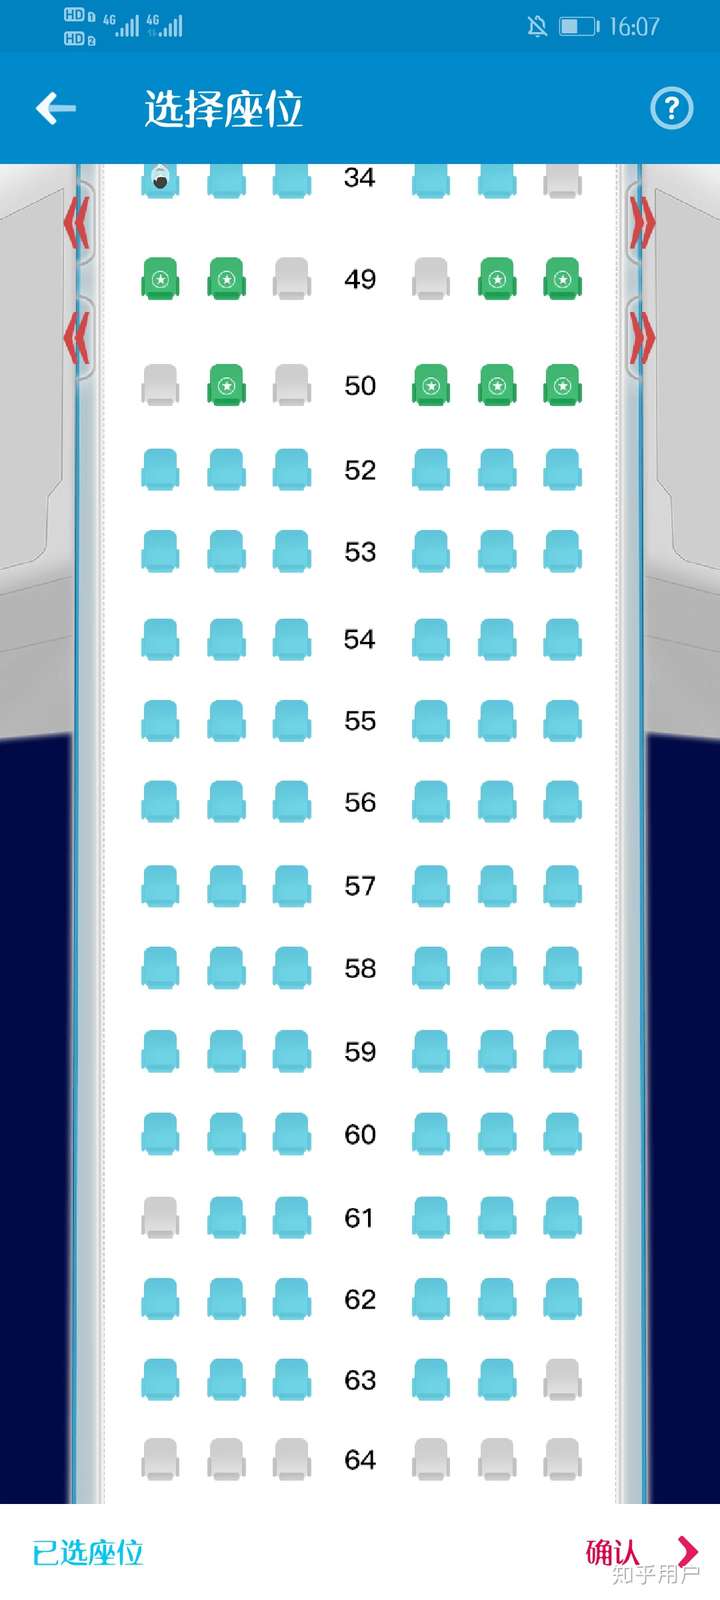 南航空客320(中)经济舱哪些座位好一些,第一次坐飞机?